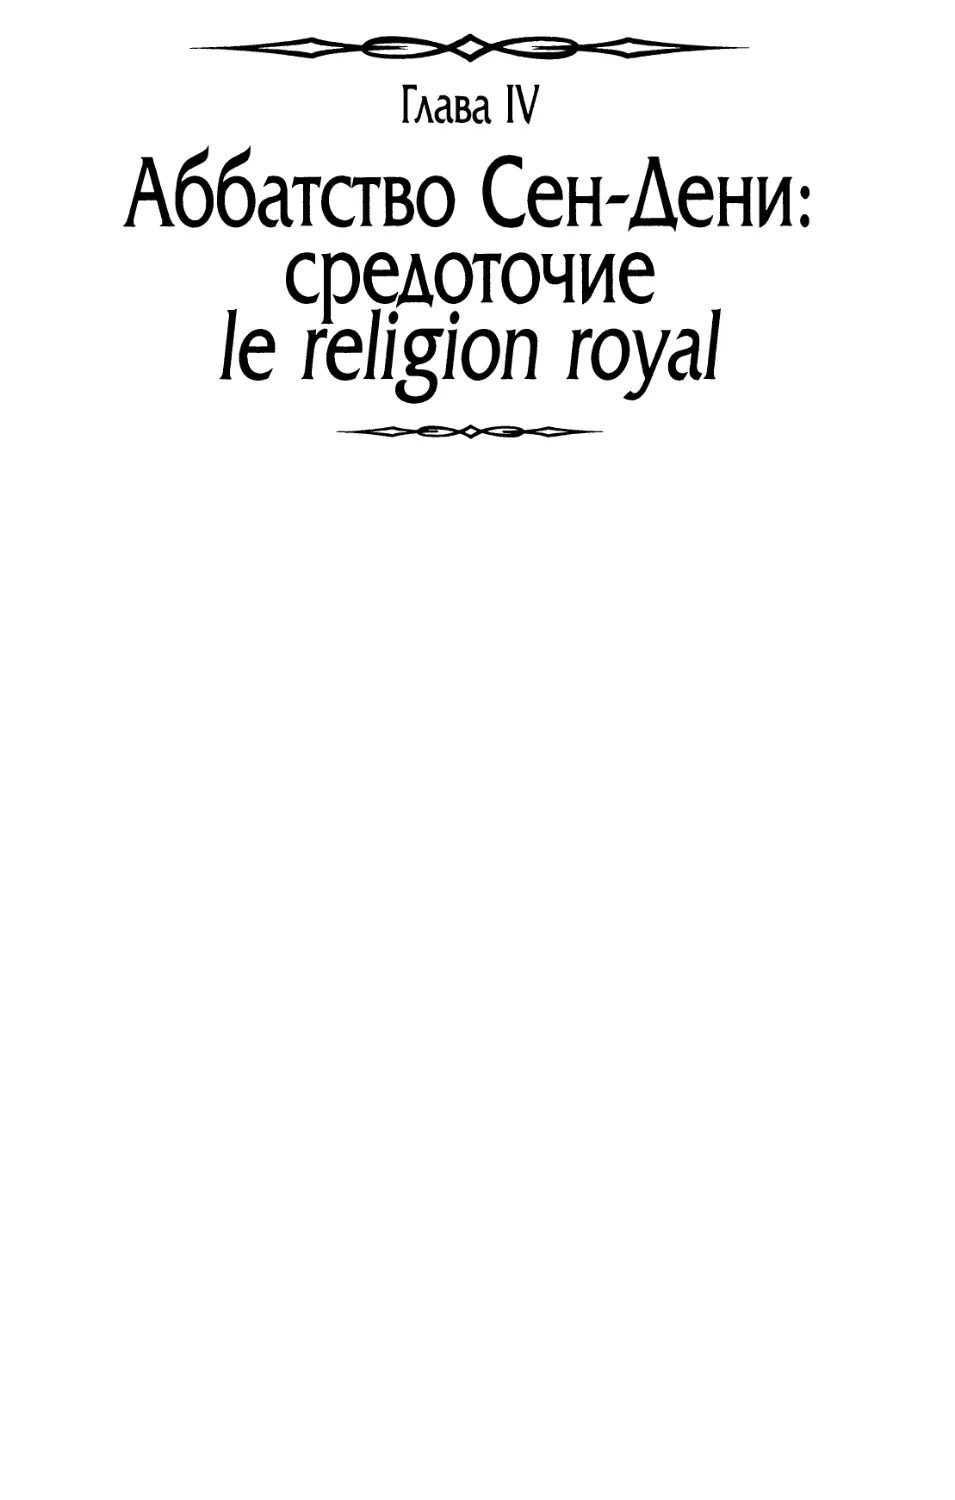 Глава IV. Аббатство Сен-Дени: средоточие le religion royal